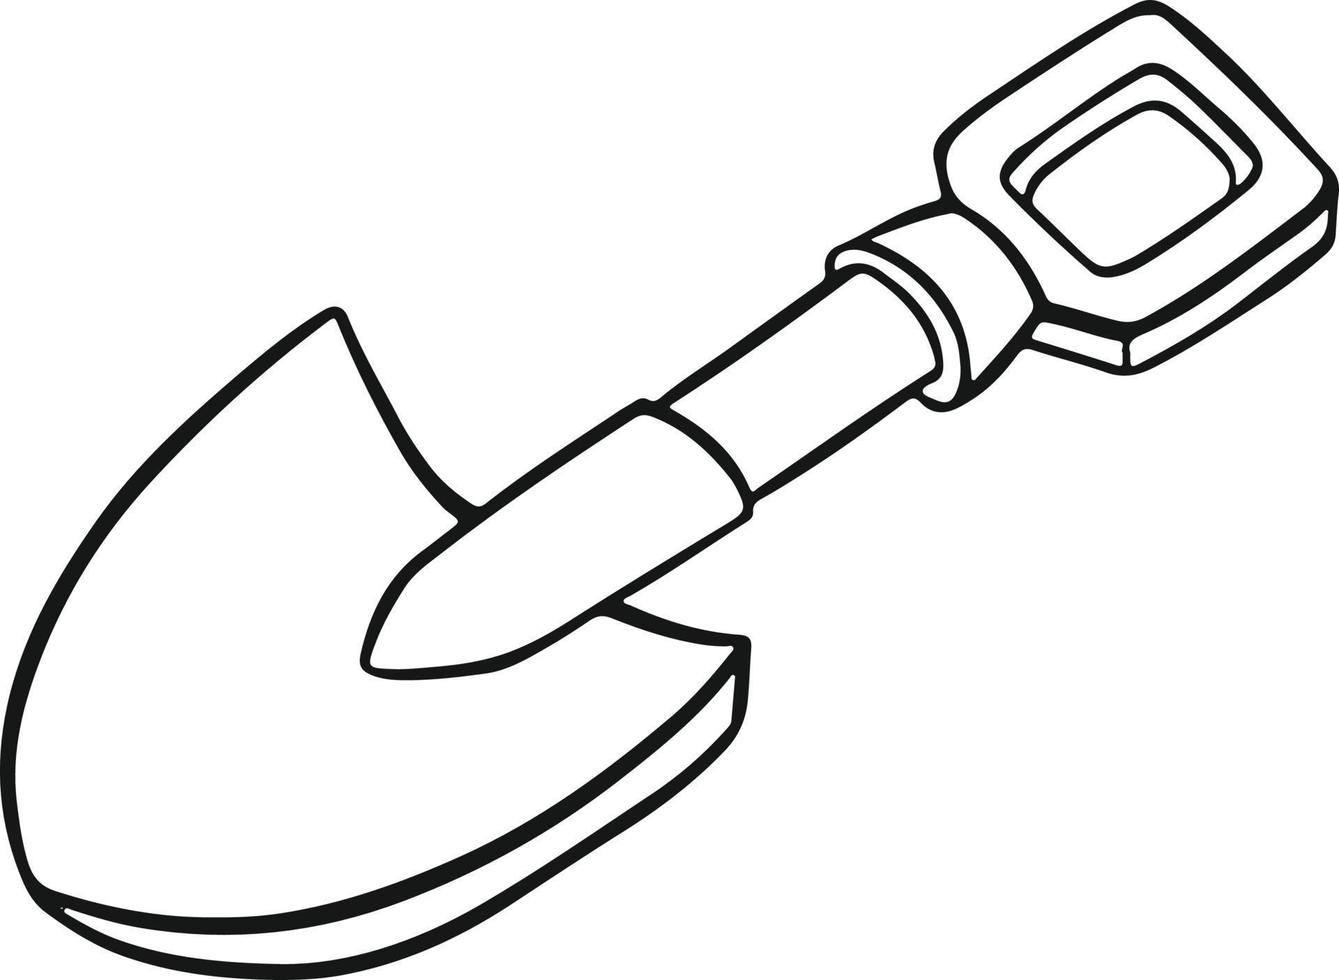 vetor de ilustração à mão livre de pá de ferramenta de trabalho agrícola